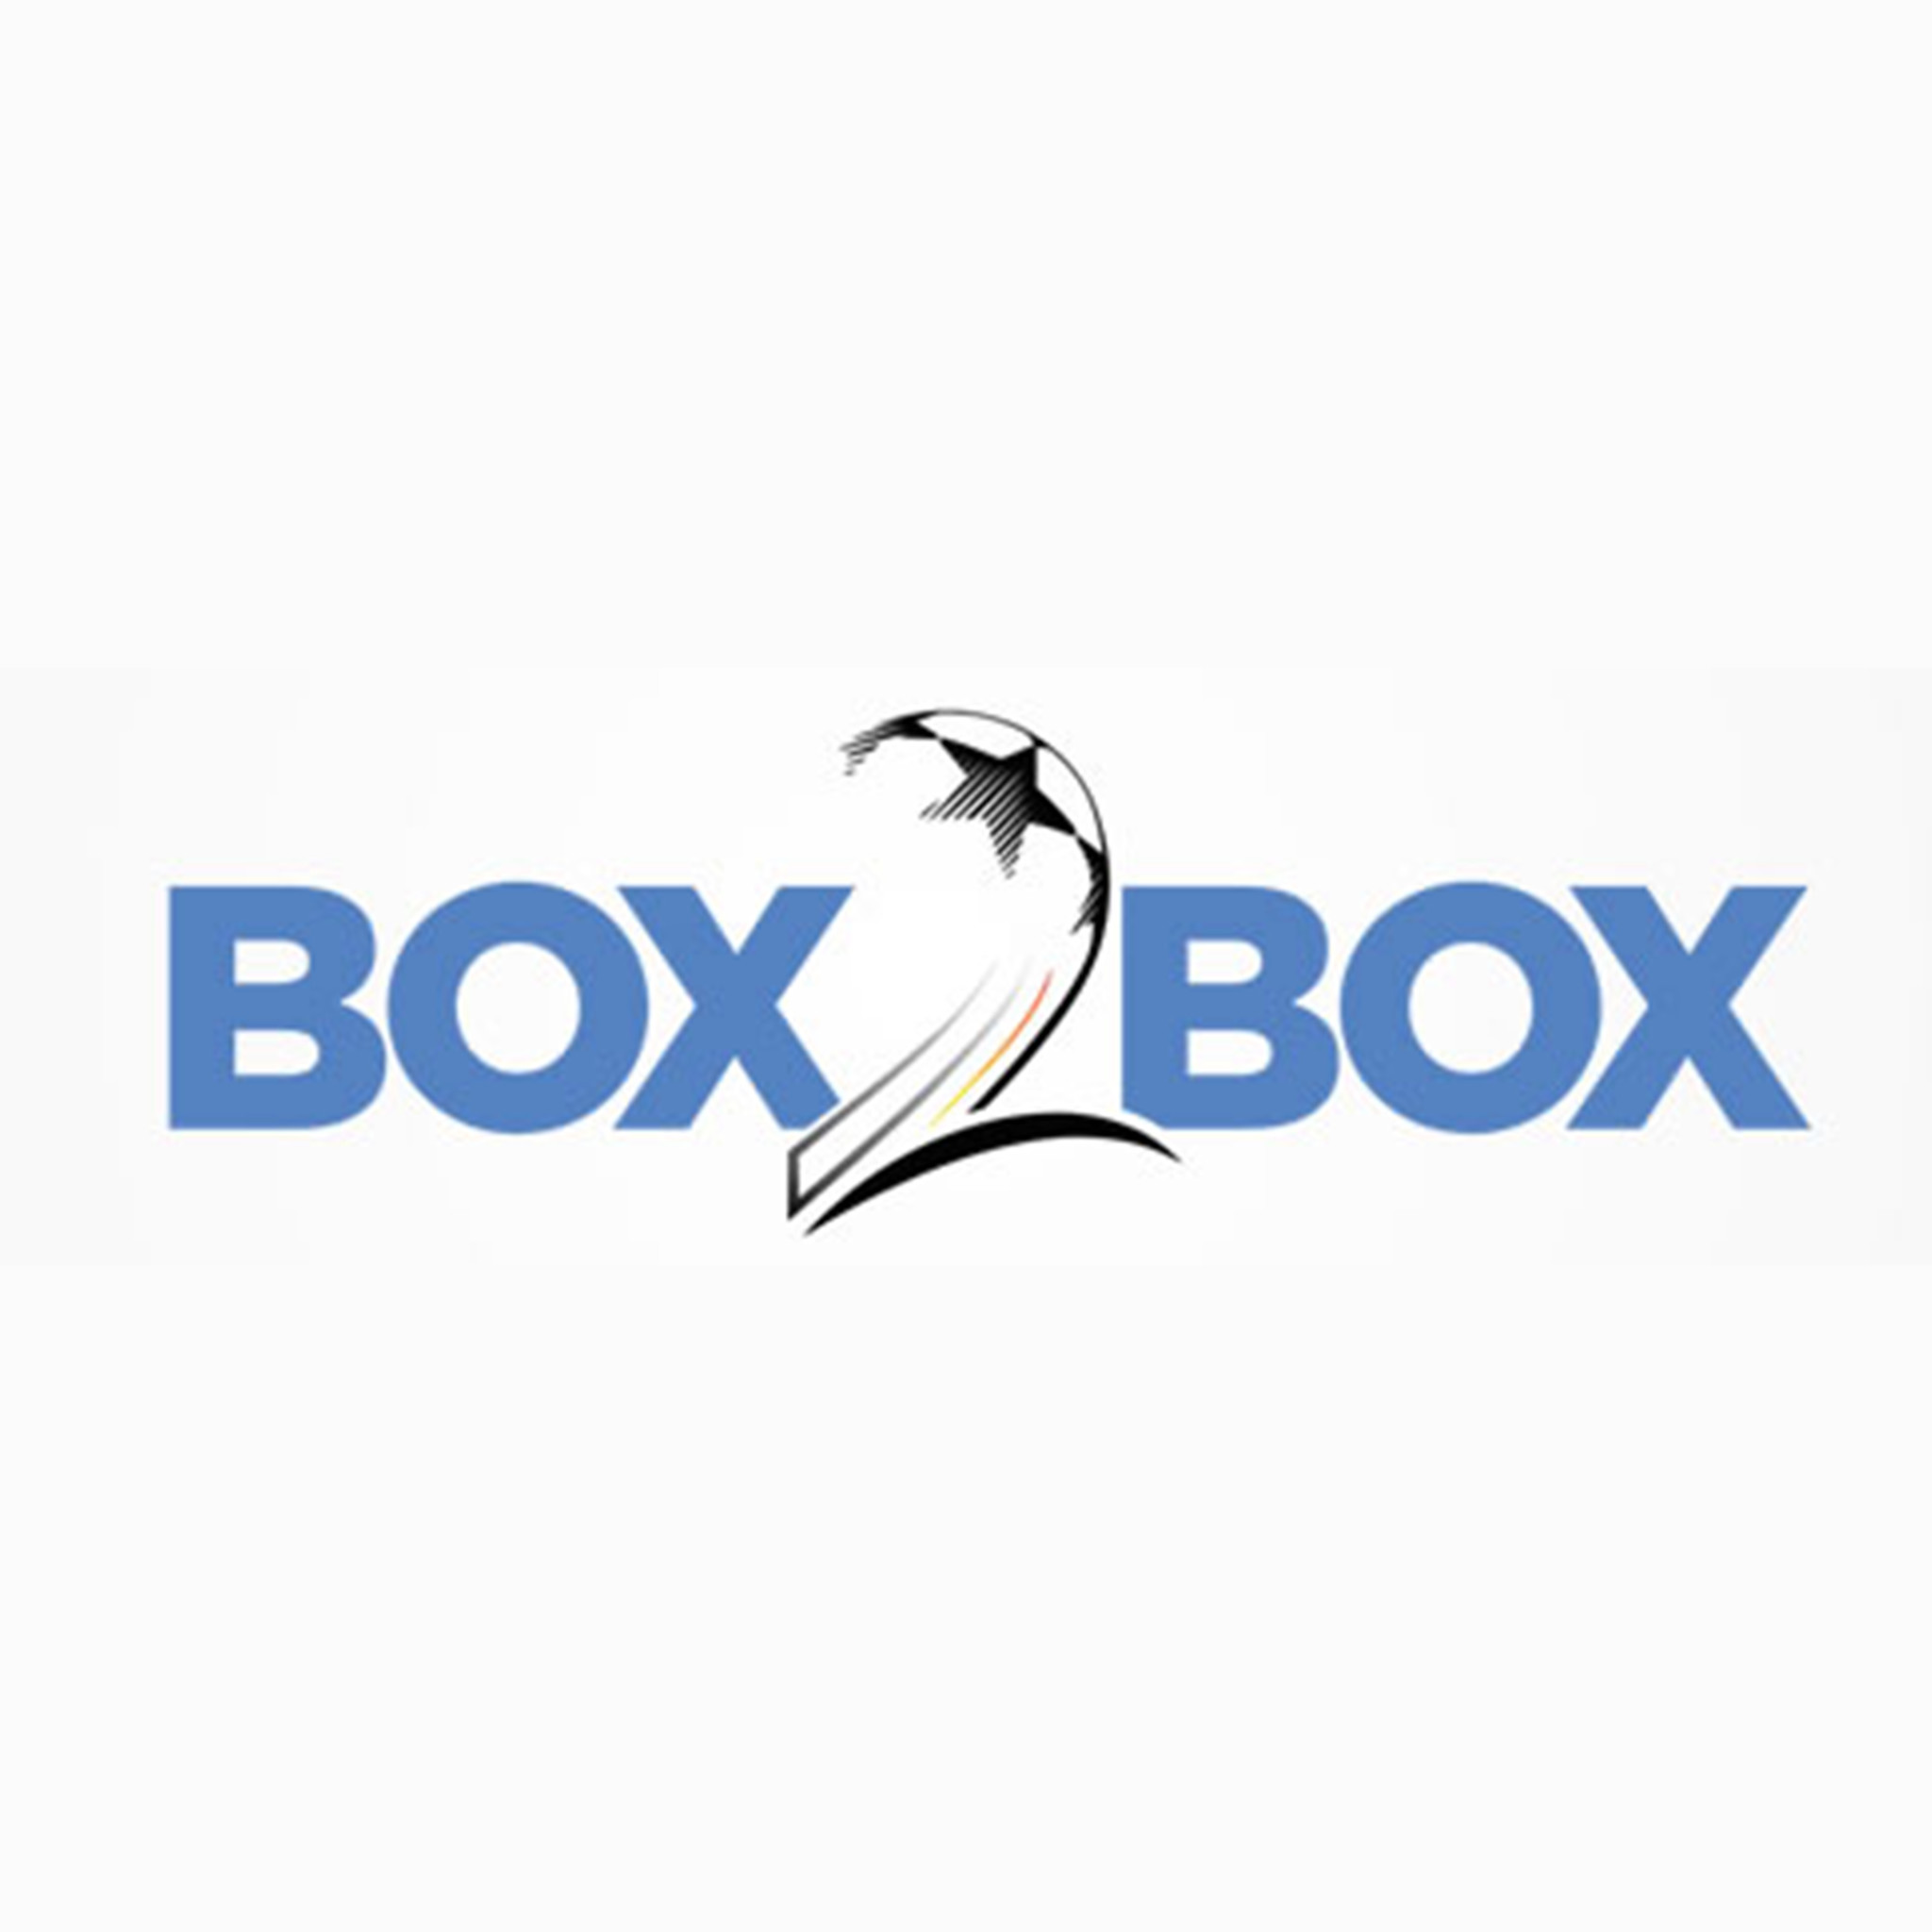 Jackson Irvine on St Pauli, Socceroos - Box2Box